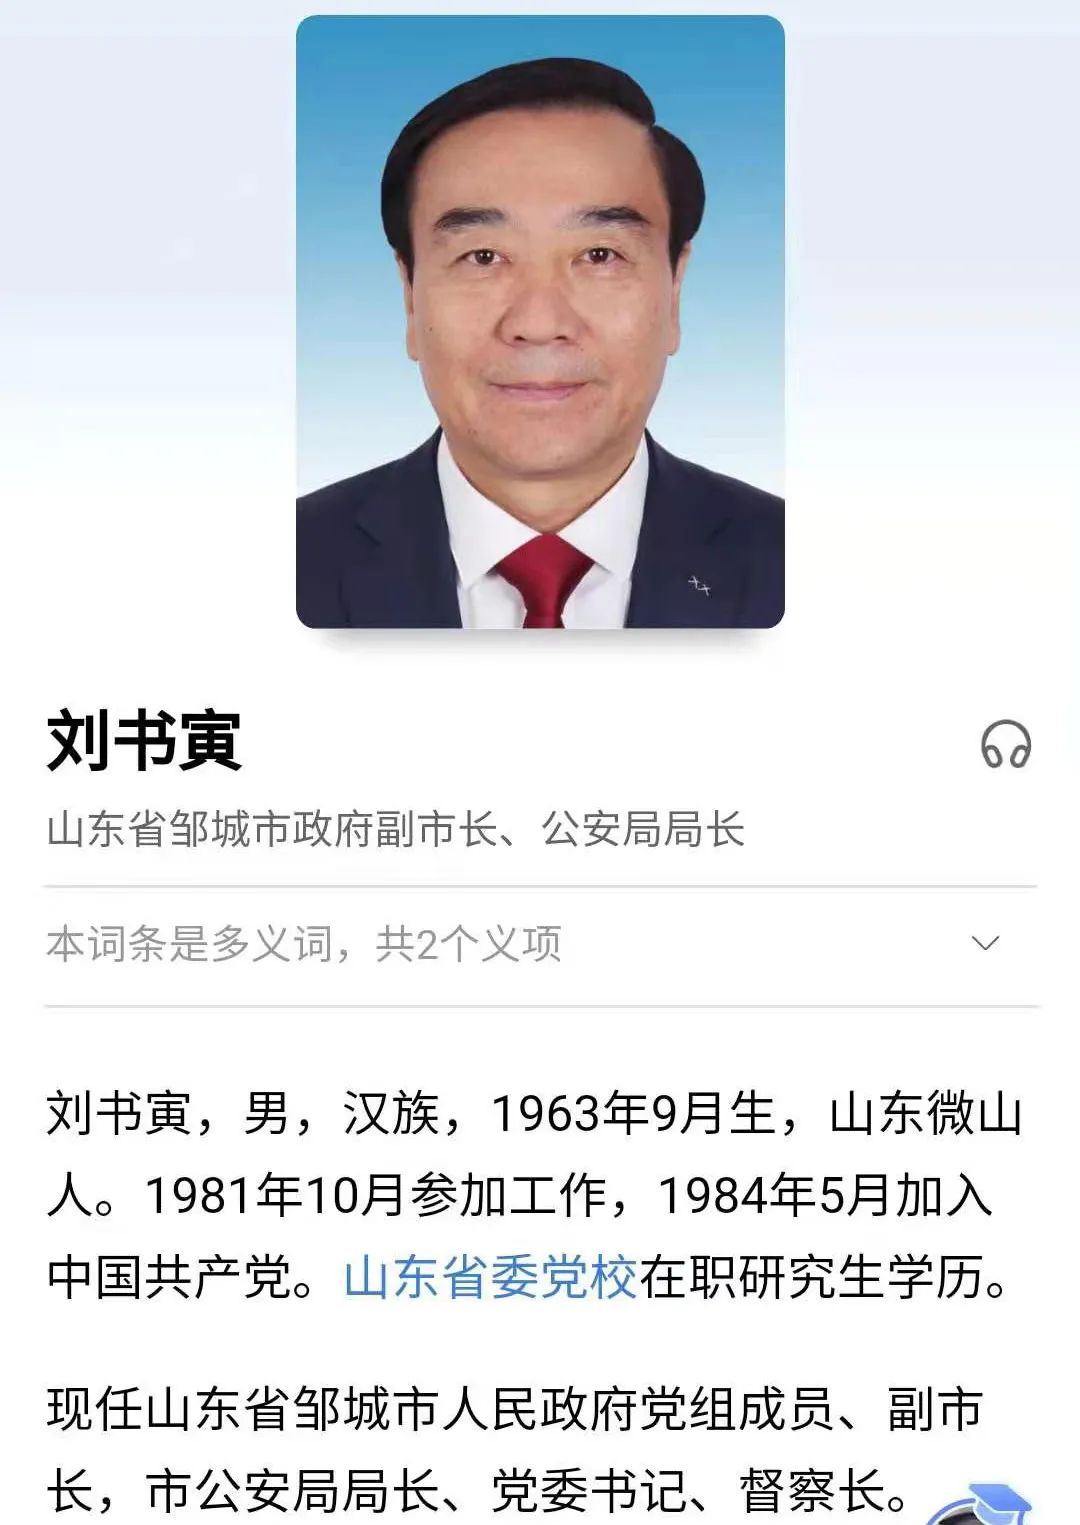 刘书寅 原邹城市副市长,涉嫌严重违纪违法